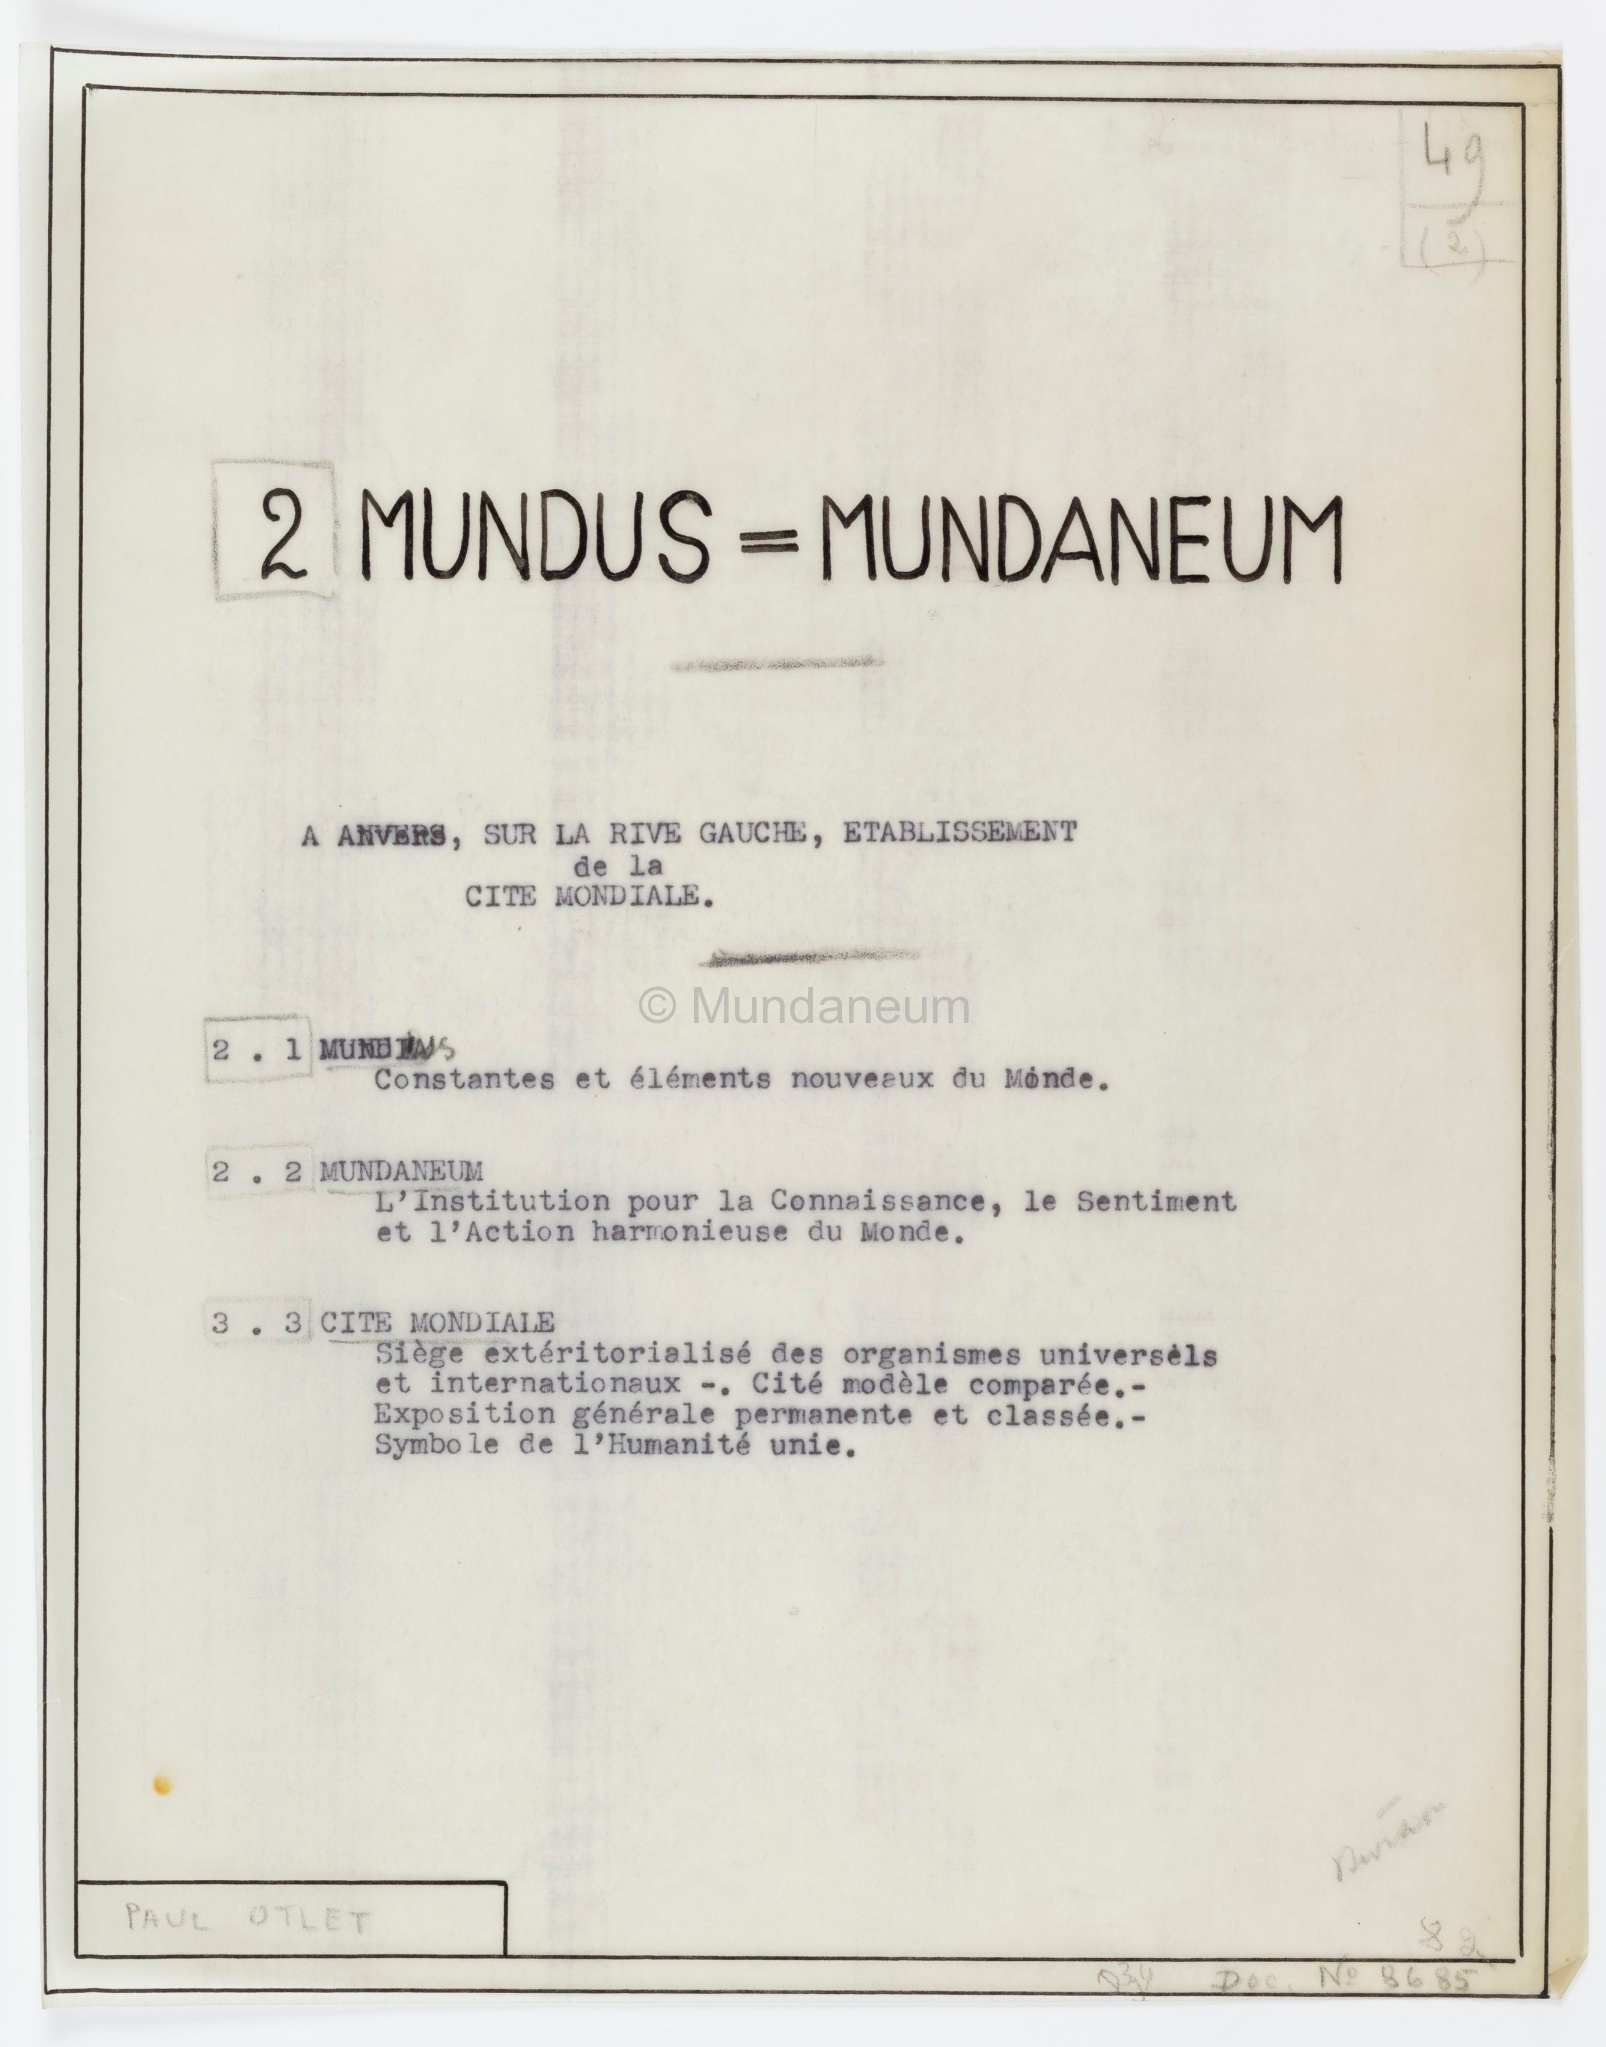 2/ Mundus – Mundaneum